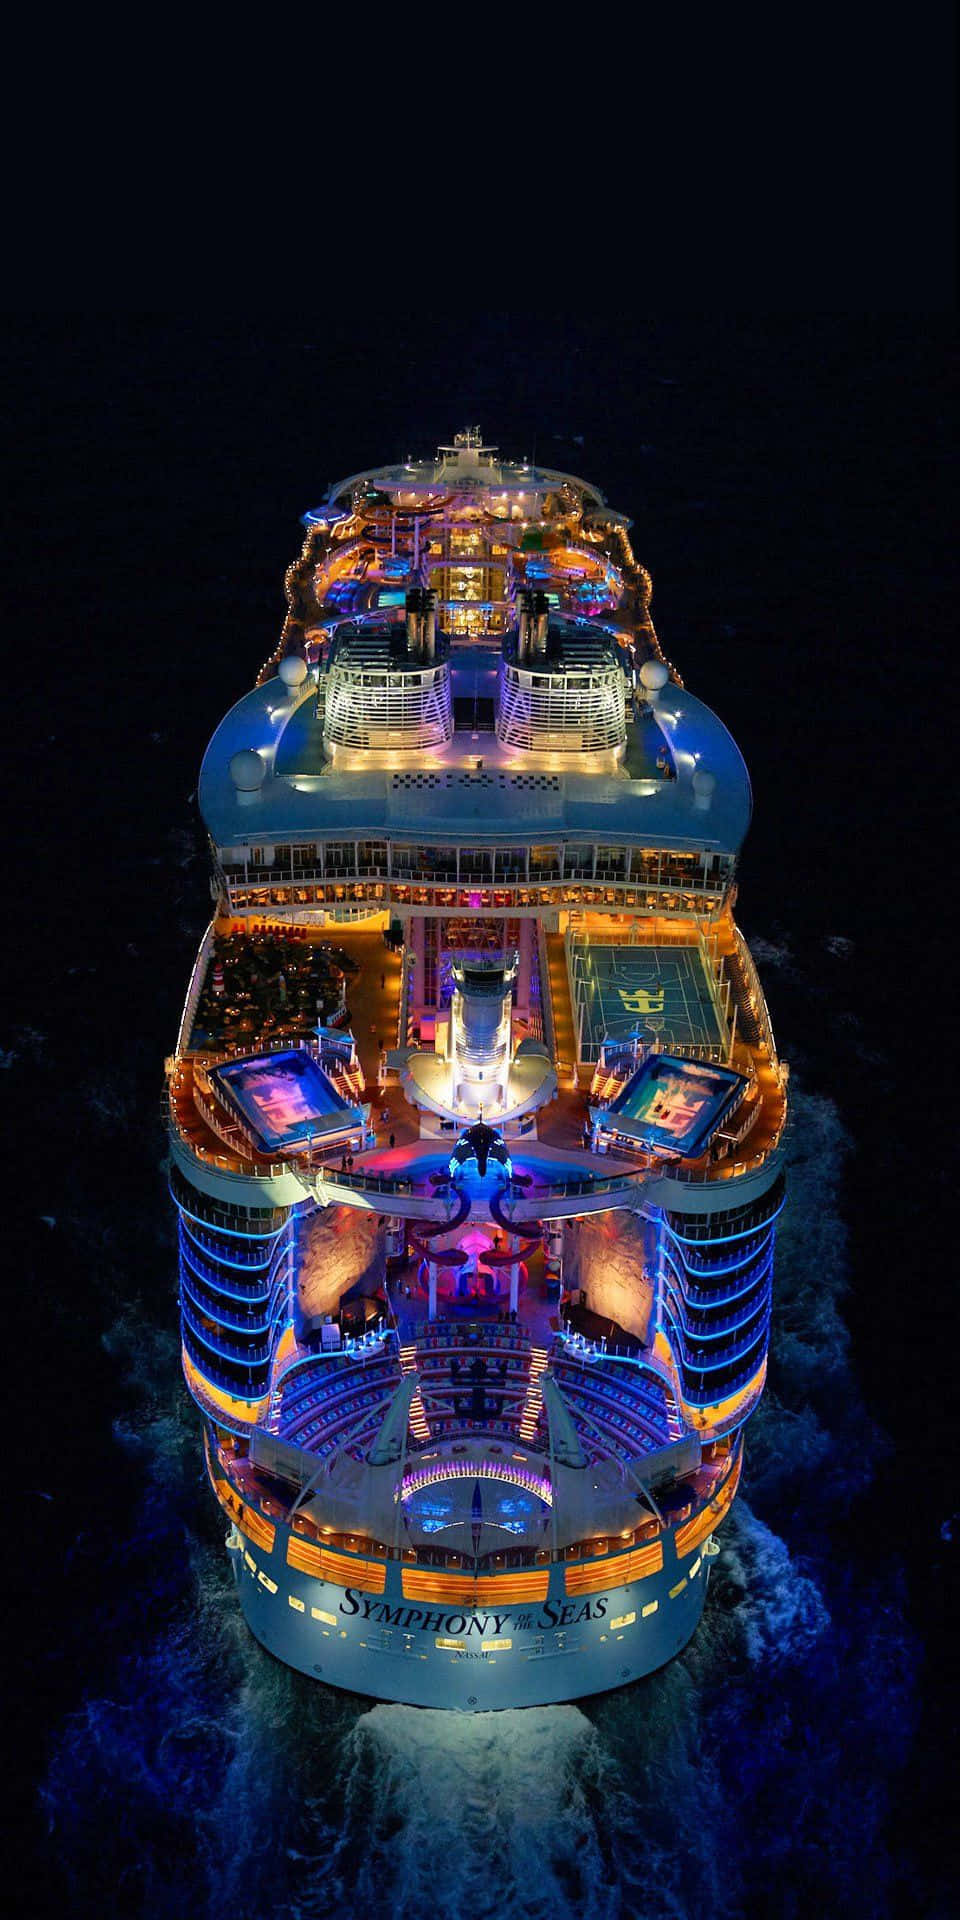 Imagende Un Barco De Crucero Con Luces Coloridas.